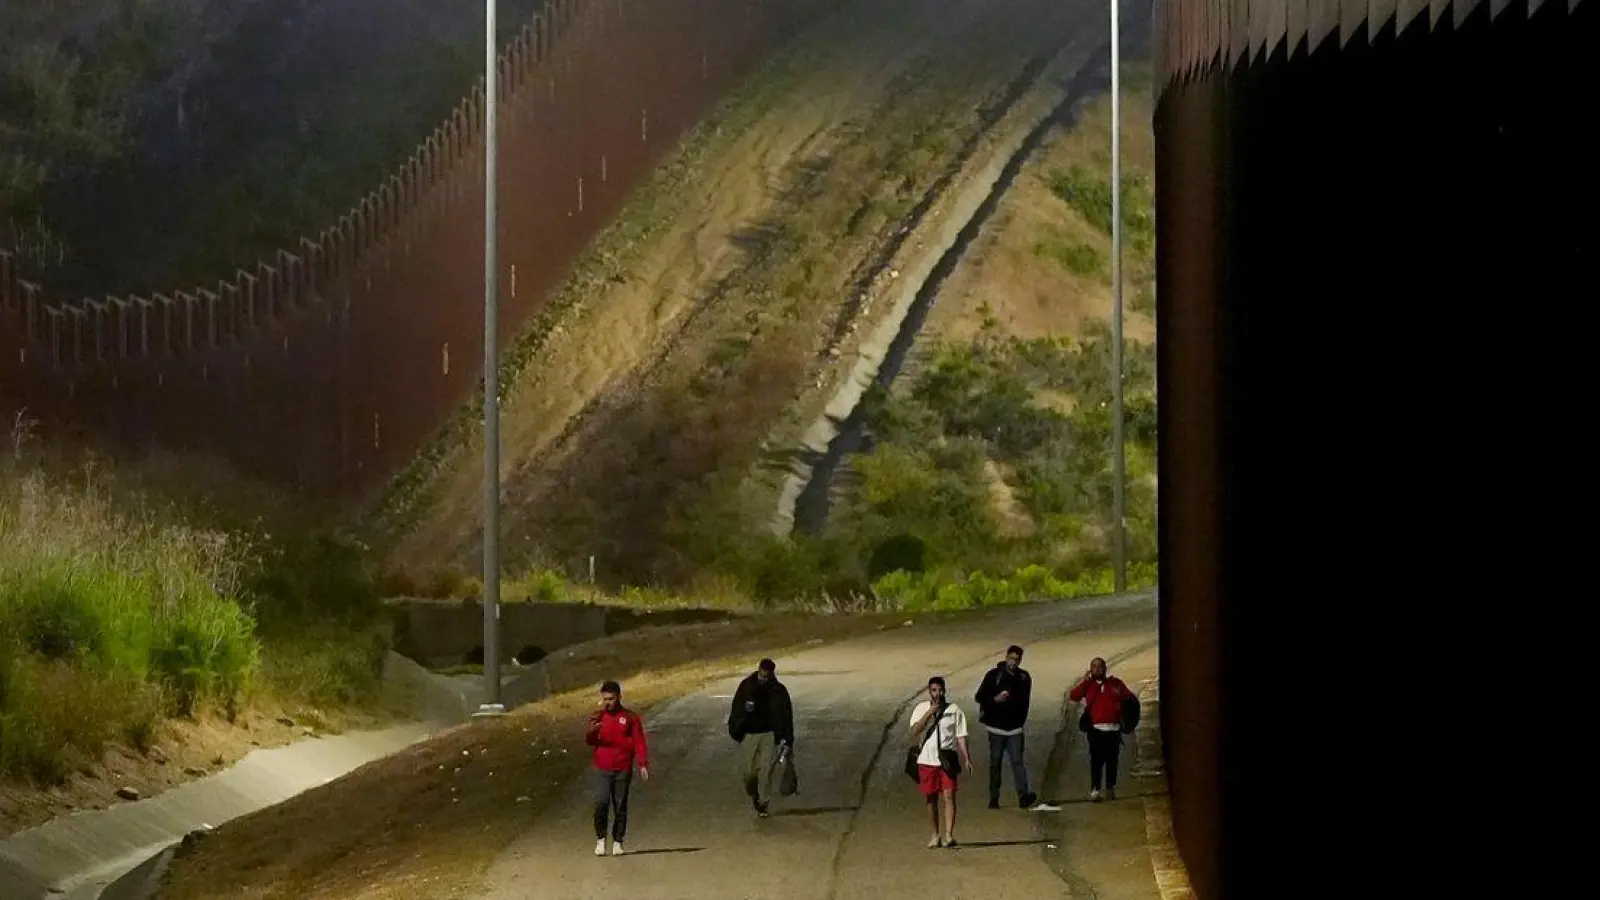 Mexiko liegt auf der Migrationsroute von Menschen, die wegen Armut, Gewalt und politischen Krisen aus ihrer Heimat fliehen. (Foto: Ryan Sun/AP/dpa)